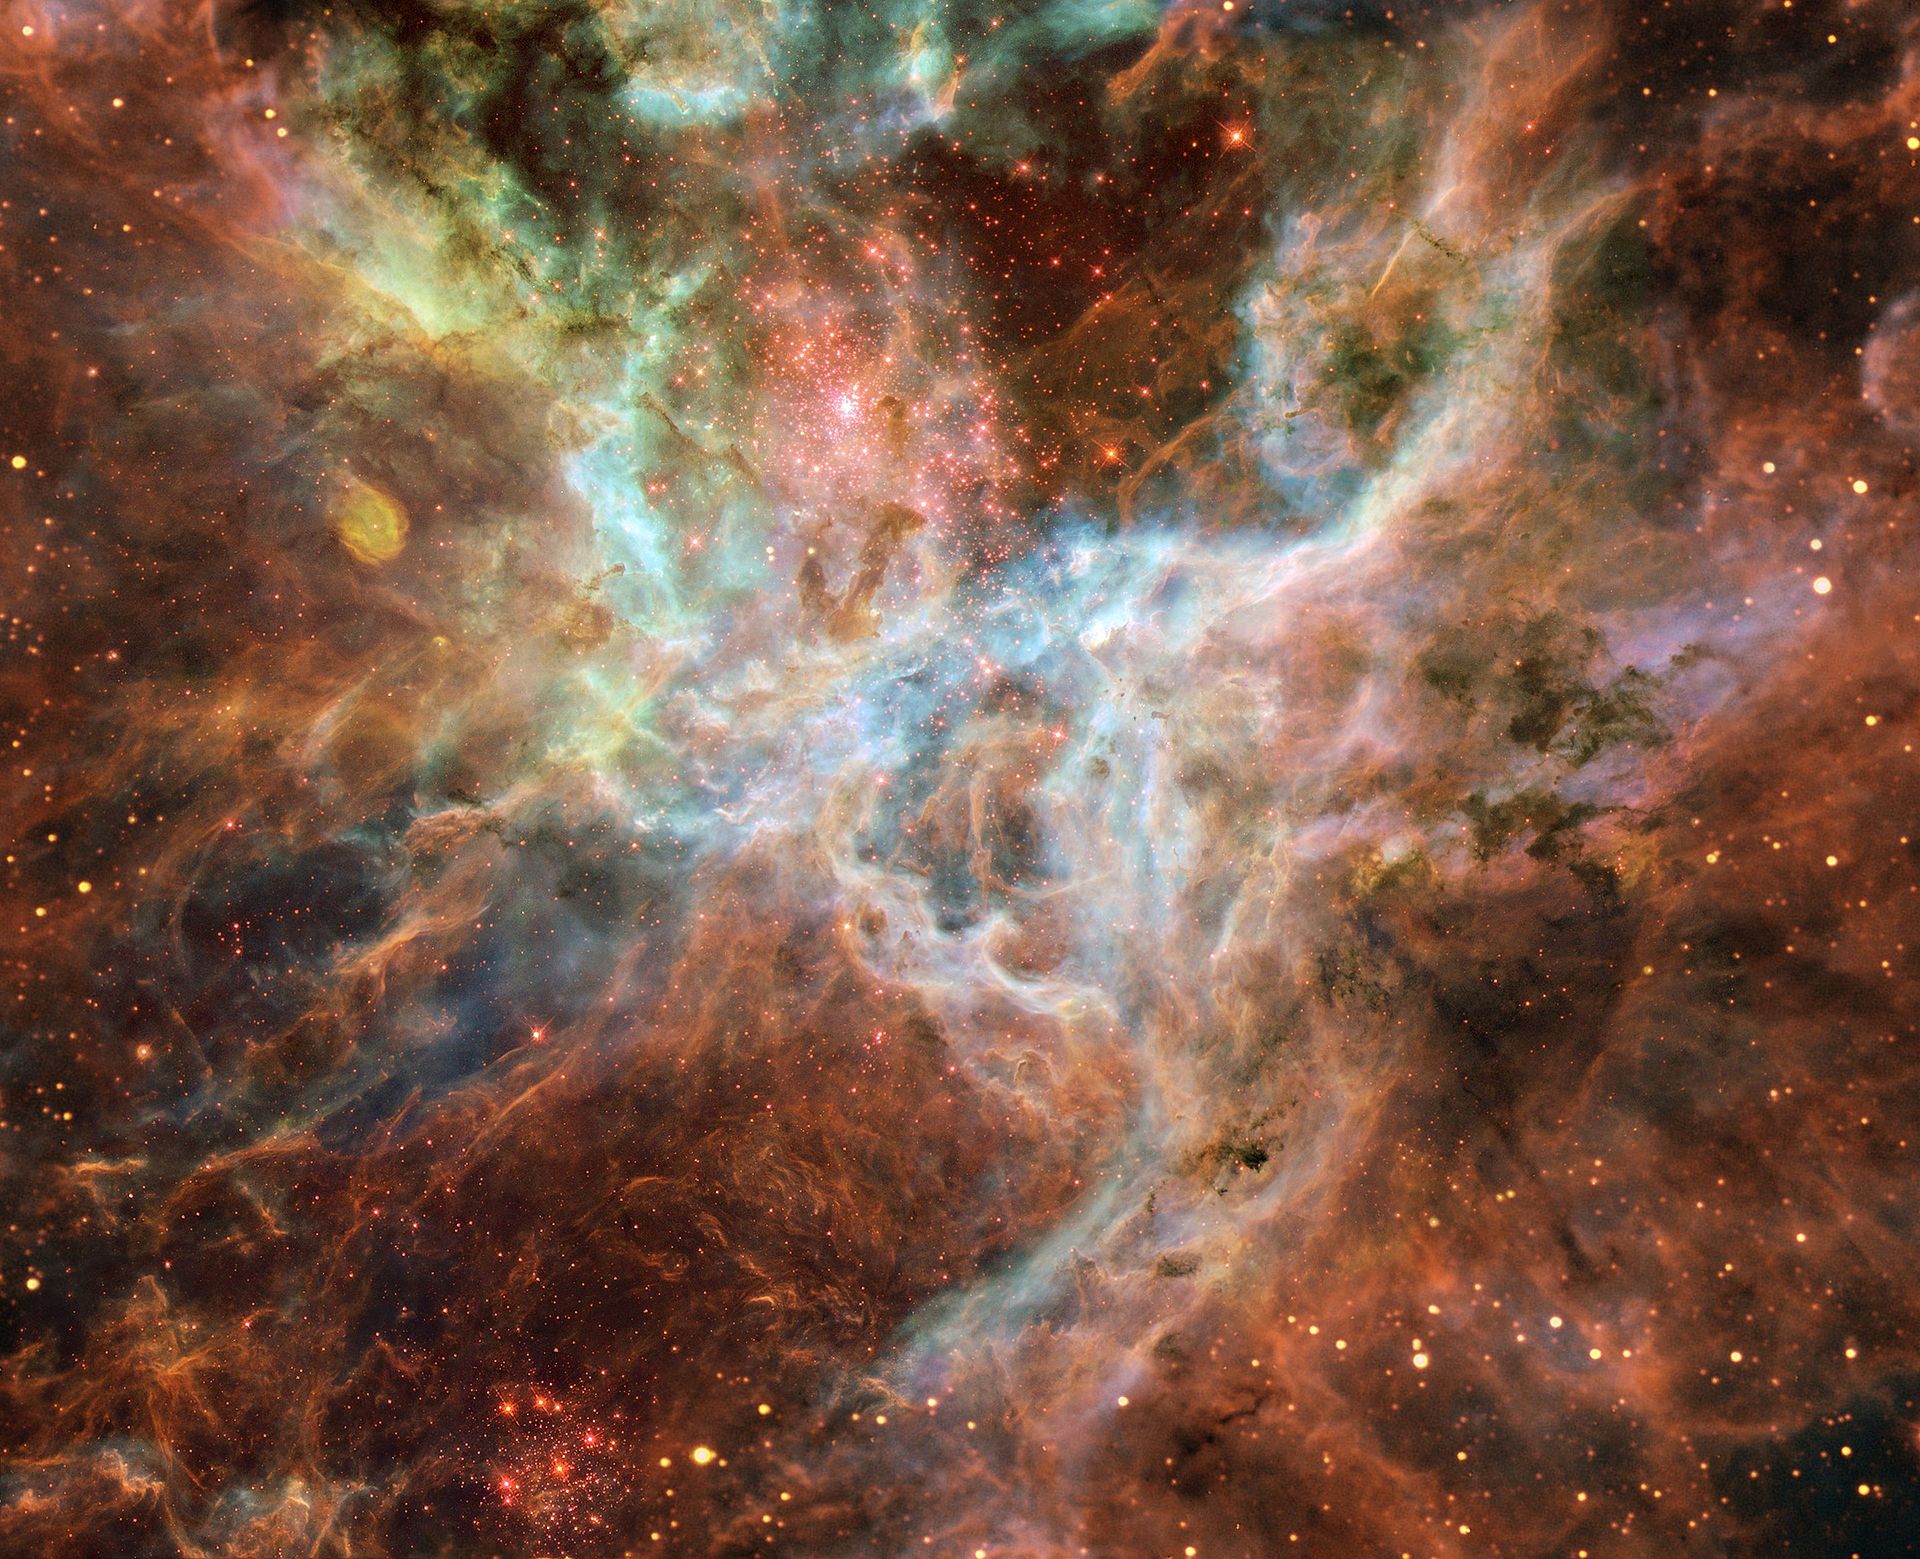 蜘蛛星云的核心部分; 由哈勃太空望远镜拍摄的15张照片拼接而成. 版权: NASA/ESA/Danny LaCrue.